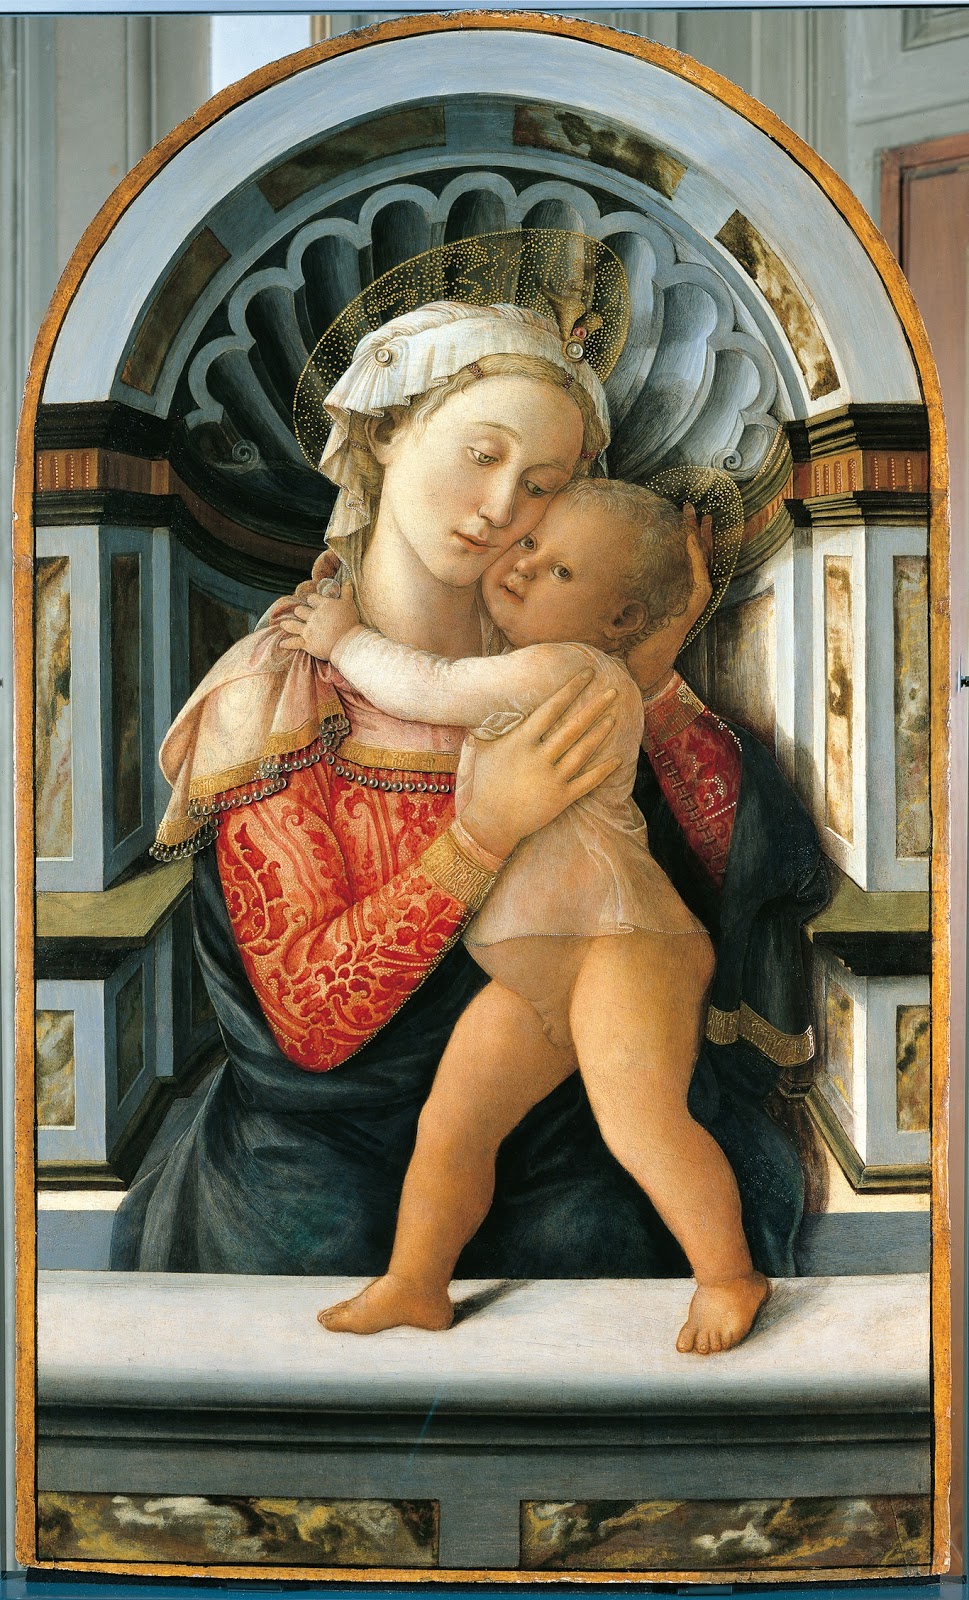 Filippino+Lippi-1457-1504 (130).jpg